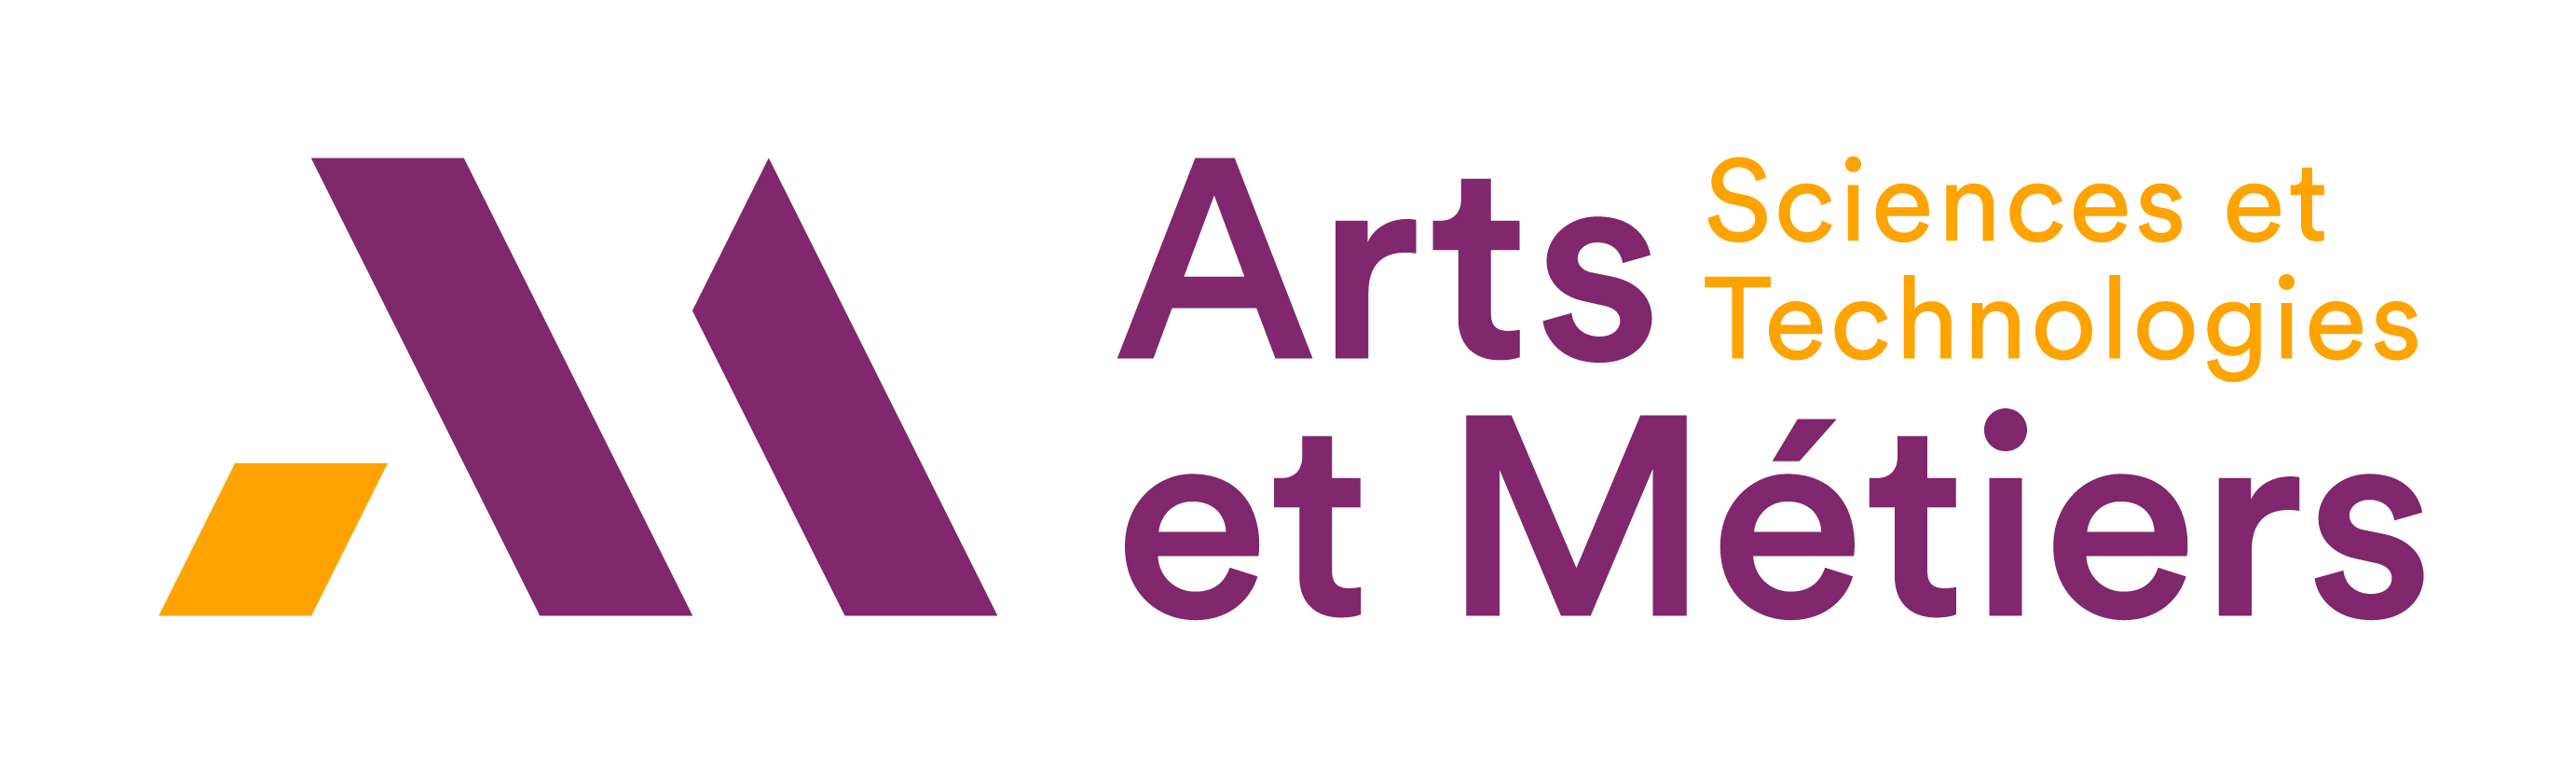 Arts et Métiers Paristech website